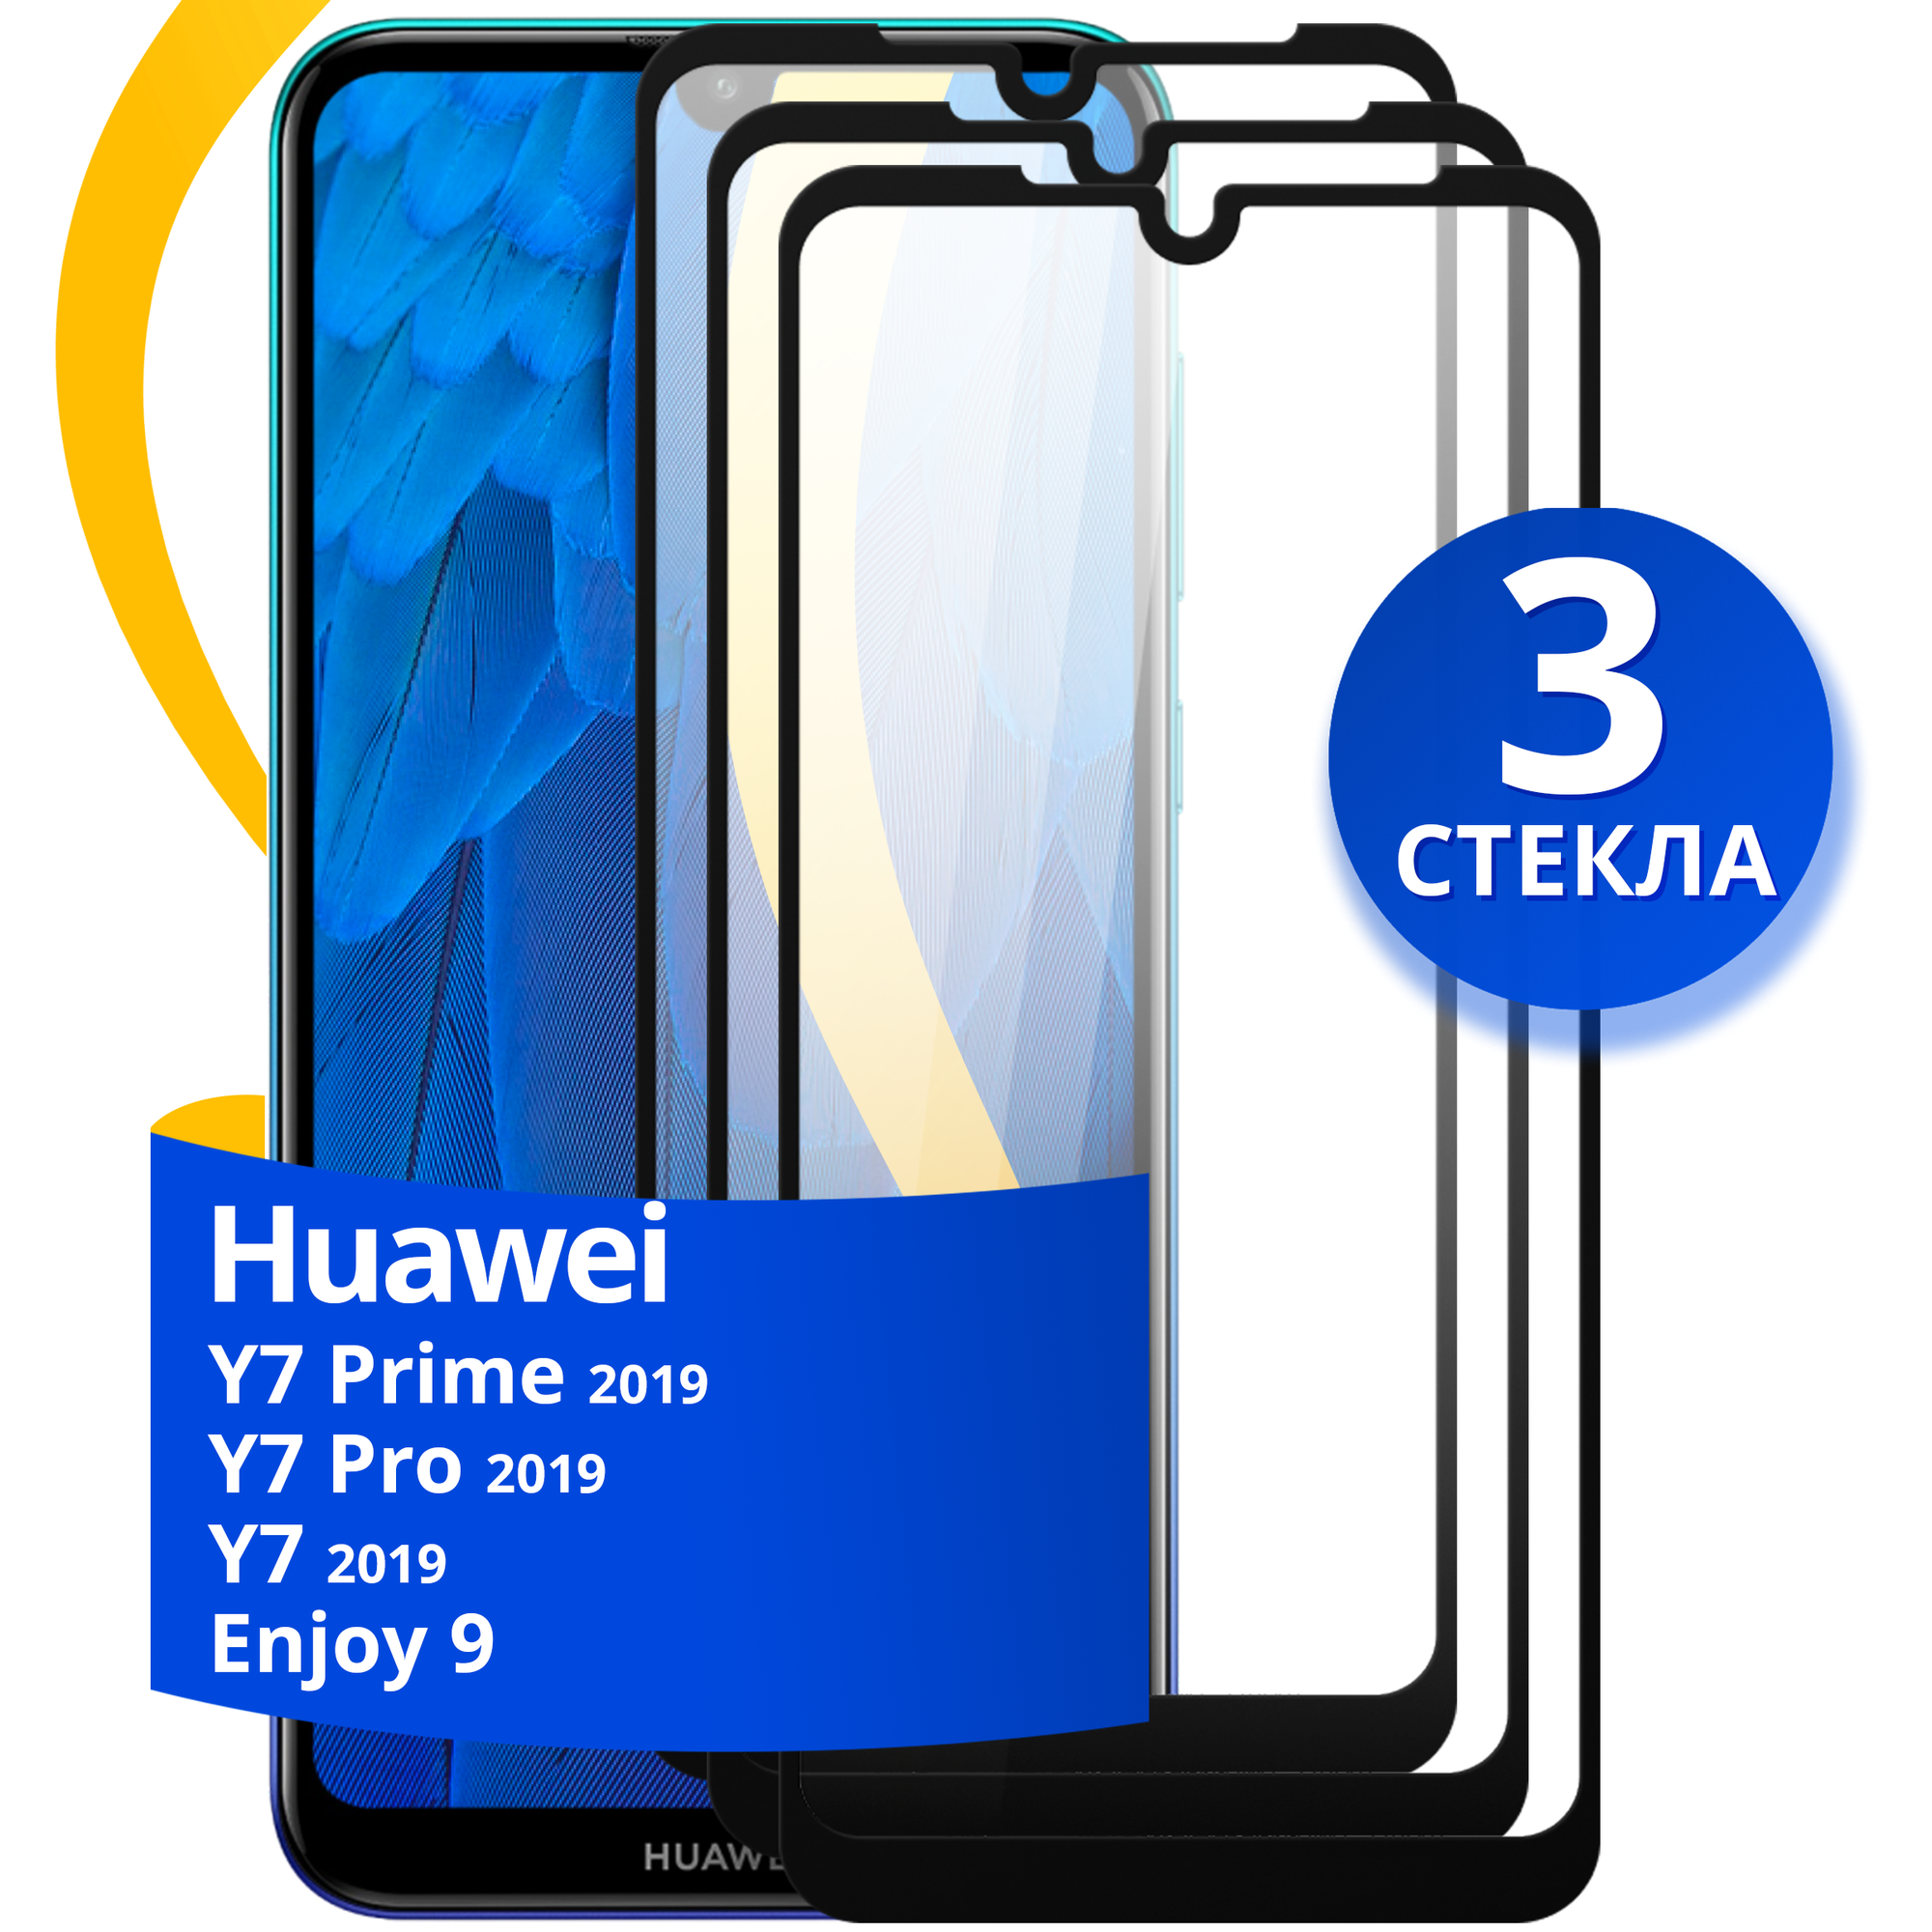 Защитное стекло на телефон Huawei Y7 Y7 Prime Y7 Pro 2019 и Enjoy 9 / Противоударное стекло для смартфона Хуавей У7 У7 Прайм У7 Про 2019 Энджой 9